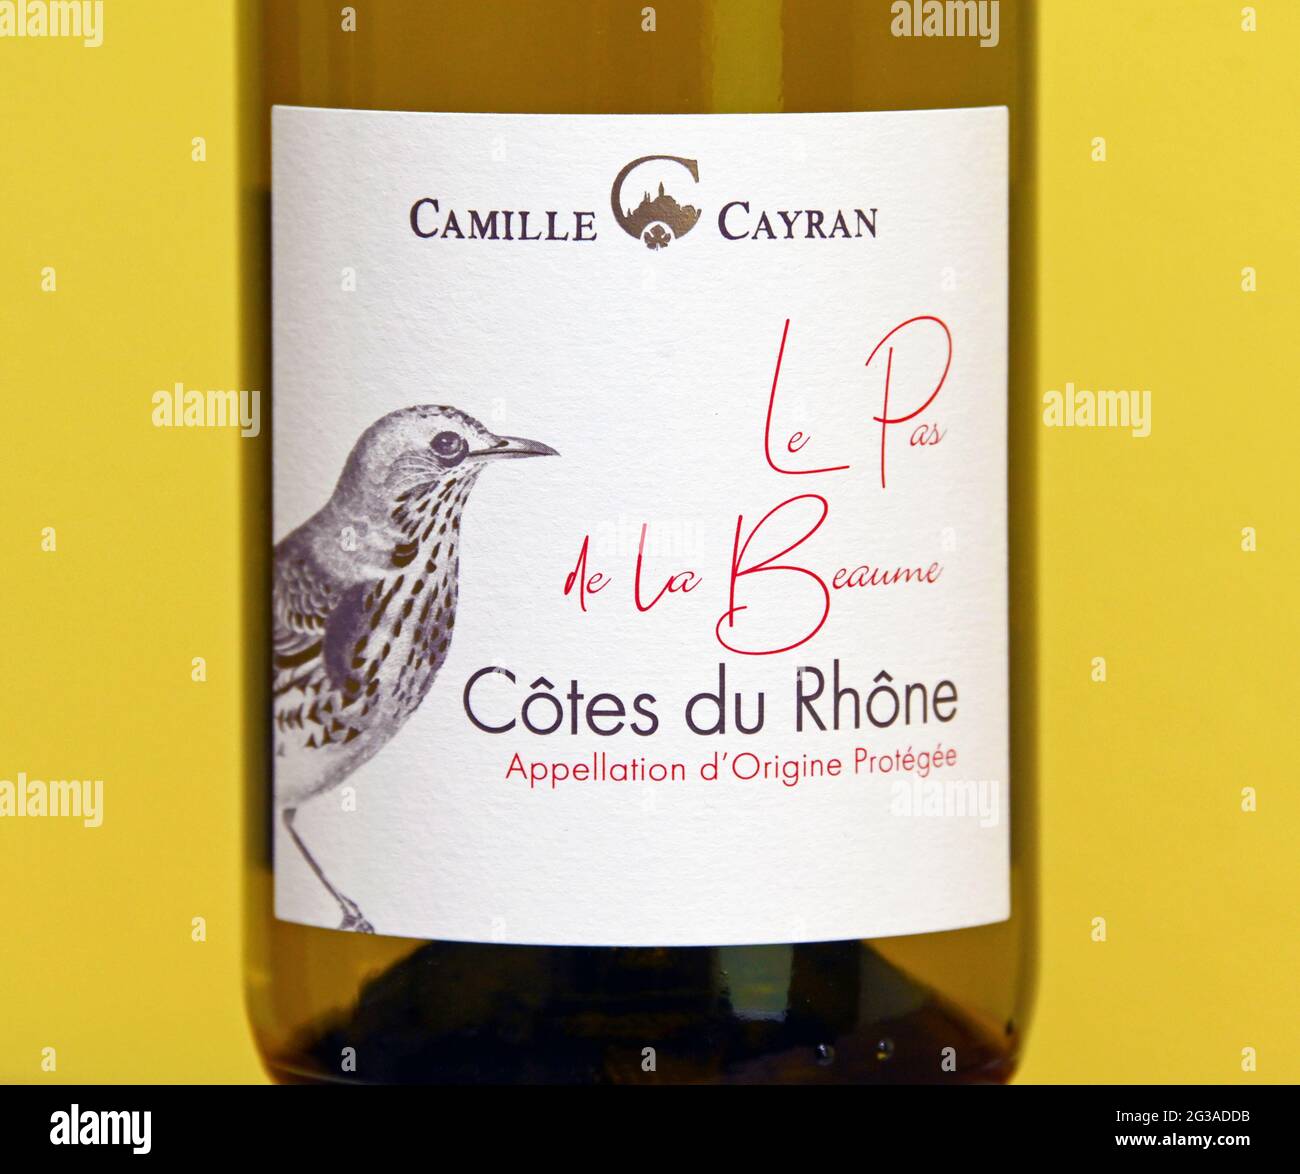 Wine label. Camille Cayran. Le Pas de la Beaume. Cotes du Rhone. Appellation d'Origine Protegee. Stock Photo